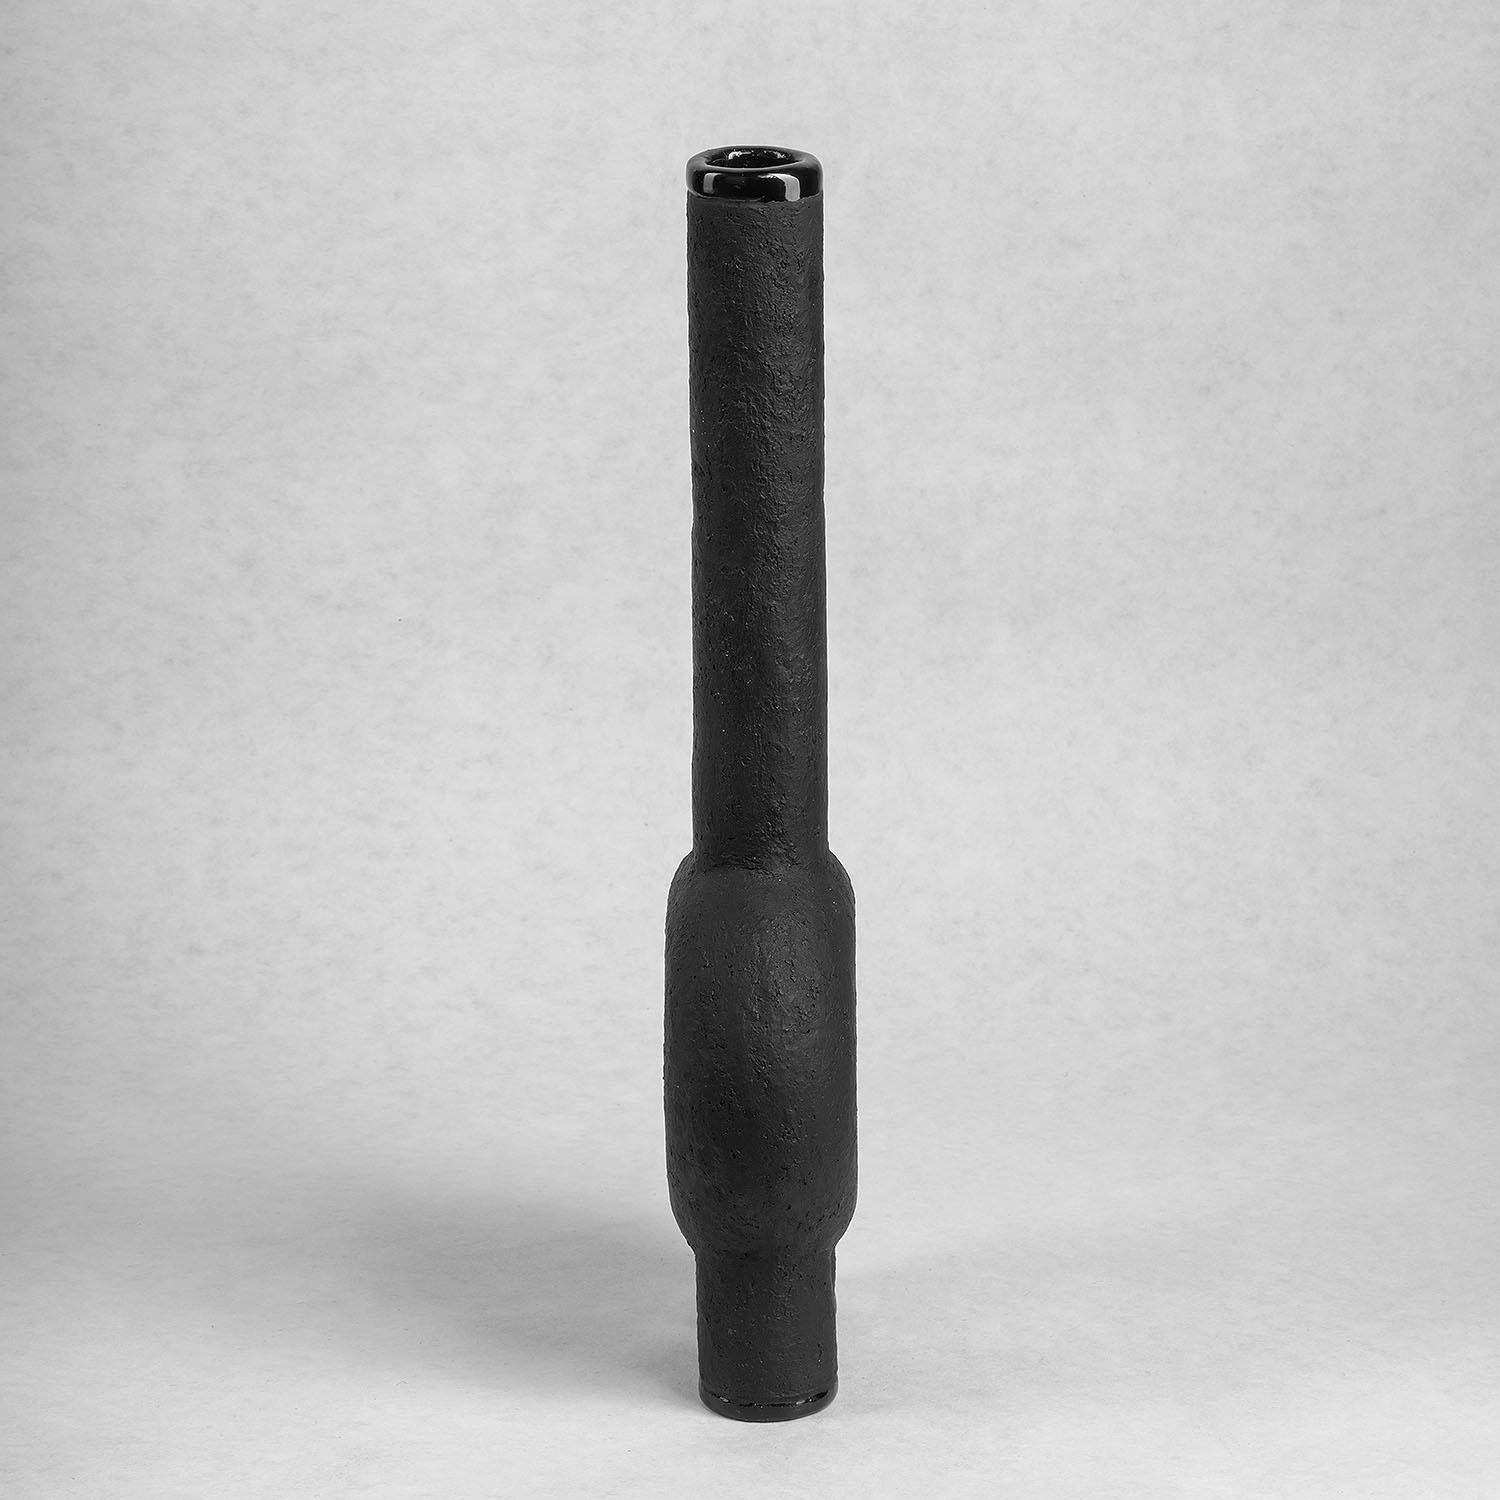 Zeitgenössische Vase aus schwarzer Keramik - Kumanec Vase mit langem Hals von Faina

Entwurf: Victoriya Yakusha
Material: Material: Ton/Keramik
Abmessungen: 7.3 x 10 x 38 cm.


(